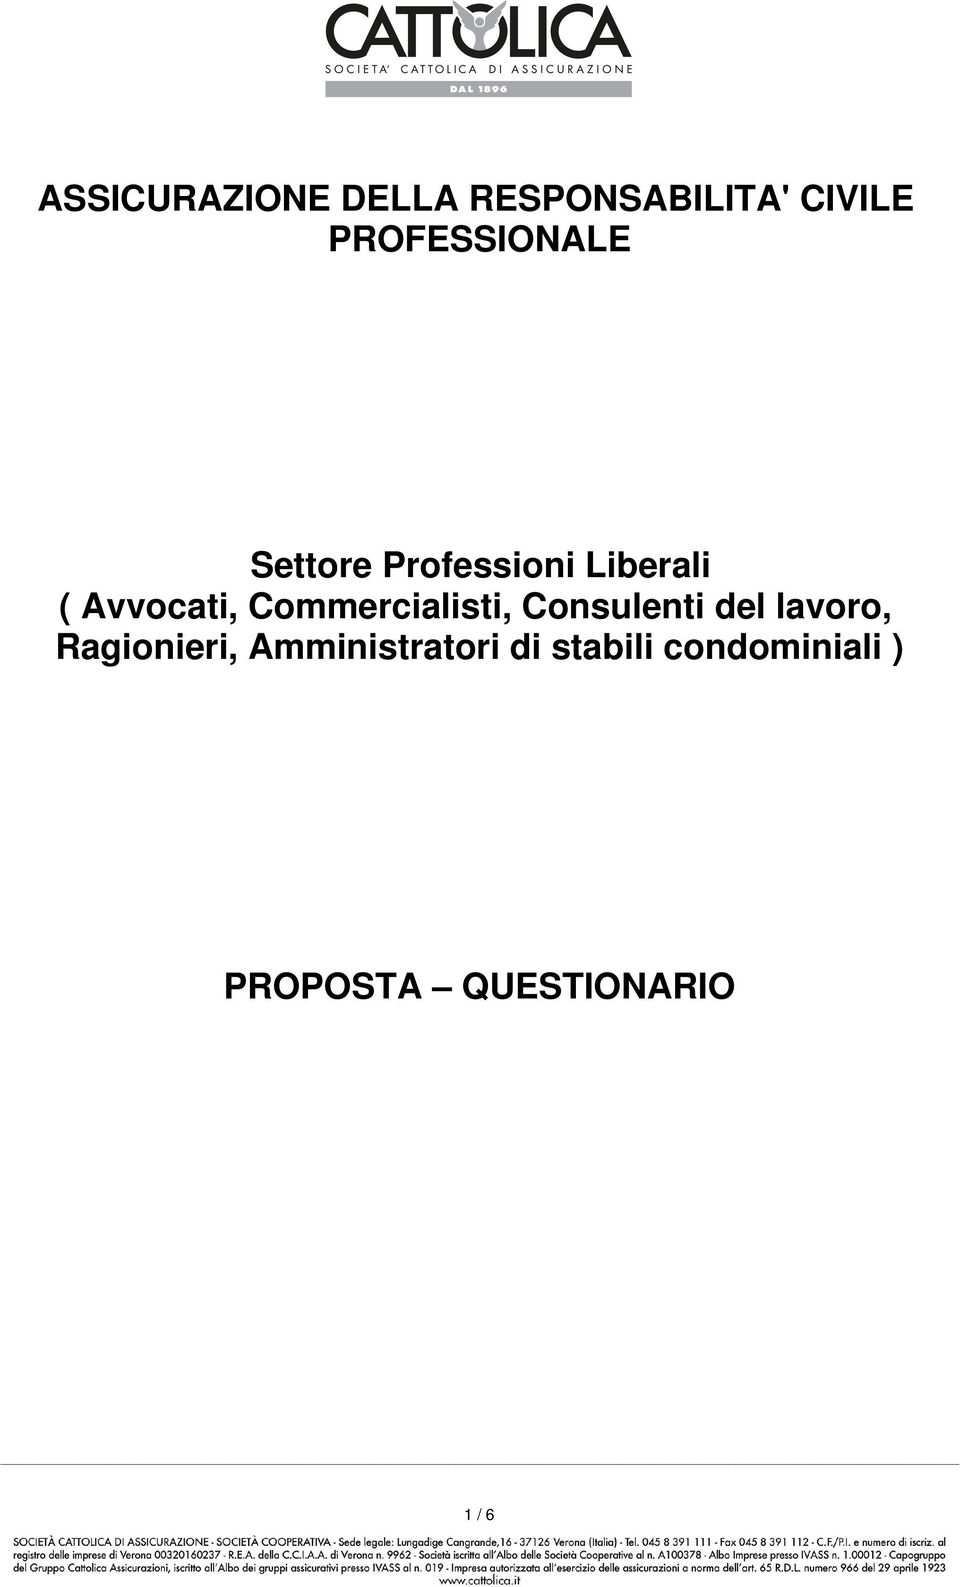 PROFESSIONALE Settore Professioni Liberali ( Avvocati, Commercialisti, Consulenti